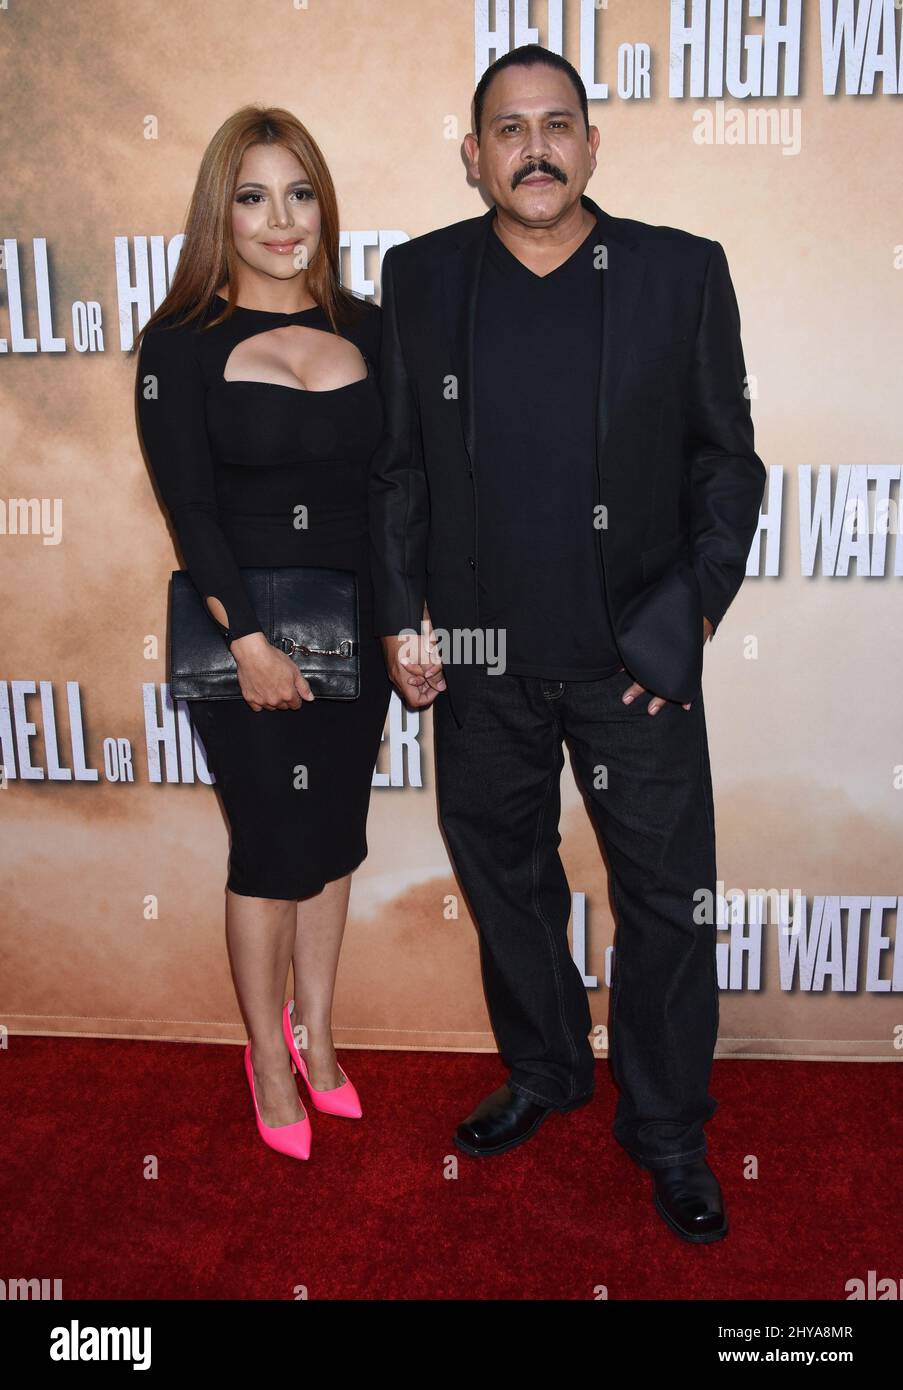 Yadi Valerio Rivera e Emilio Rivera partecipano alla proiezione speciale dell'Inferno o dell'acqua alta tenuta ai cinema ARCLIGHT di Hollywood a Los Angeles, CA, USA, 10 agosto 2016. Foto Stock